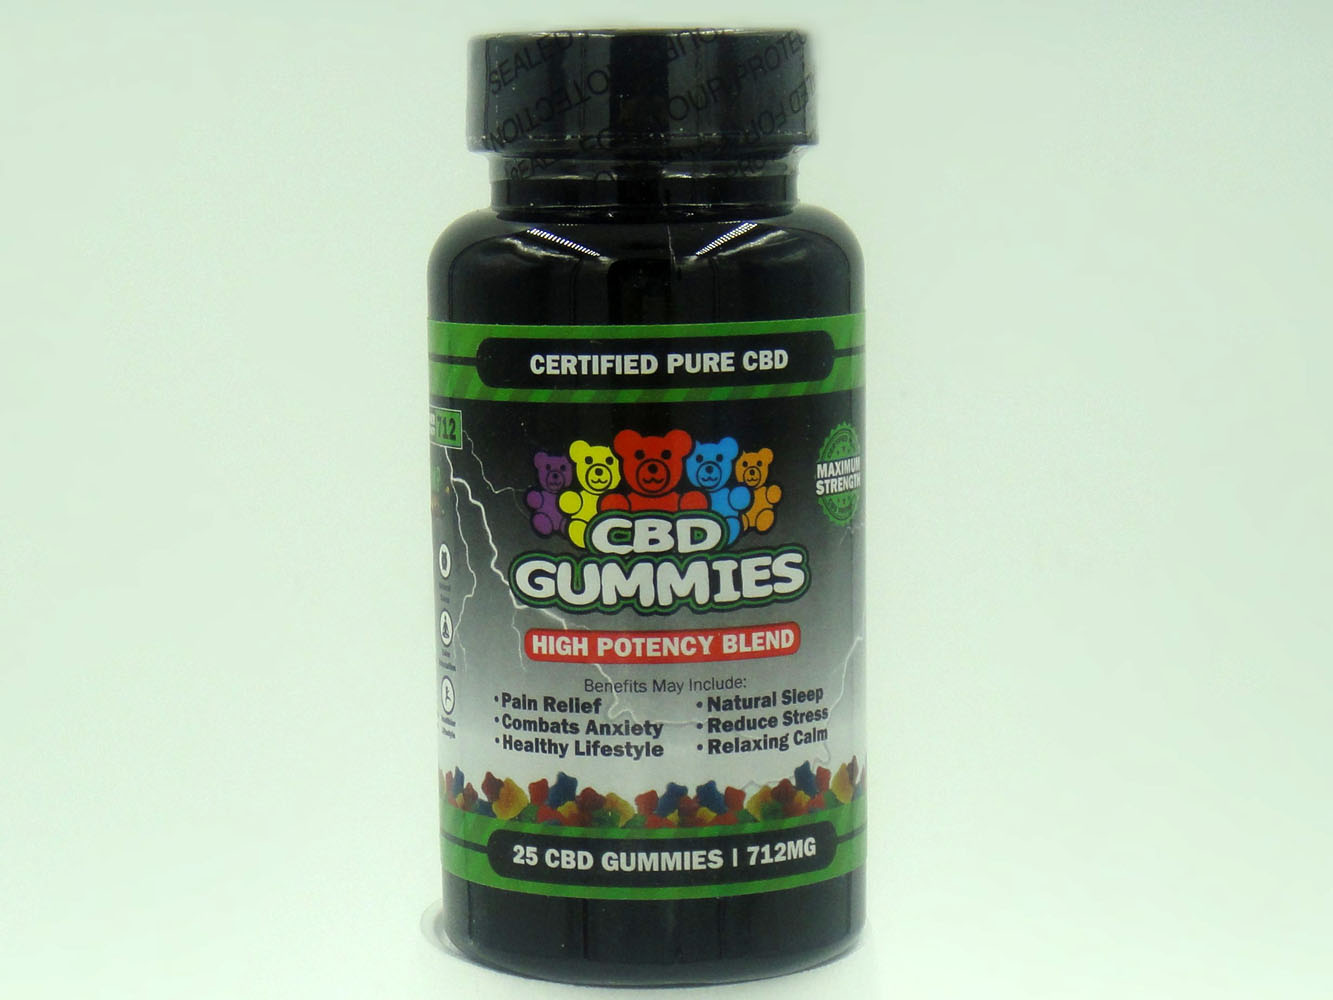 Hemp Bombs High Potency Blend Mood Enhancement  Gummies - 25ct Bottle 712mg